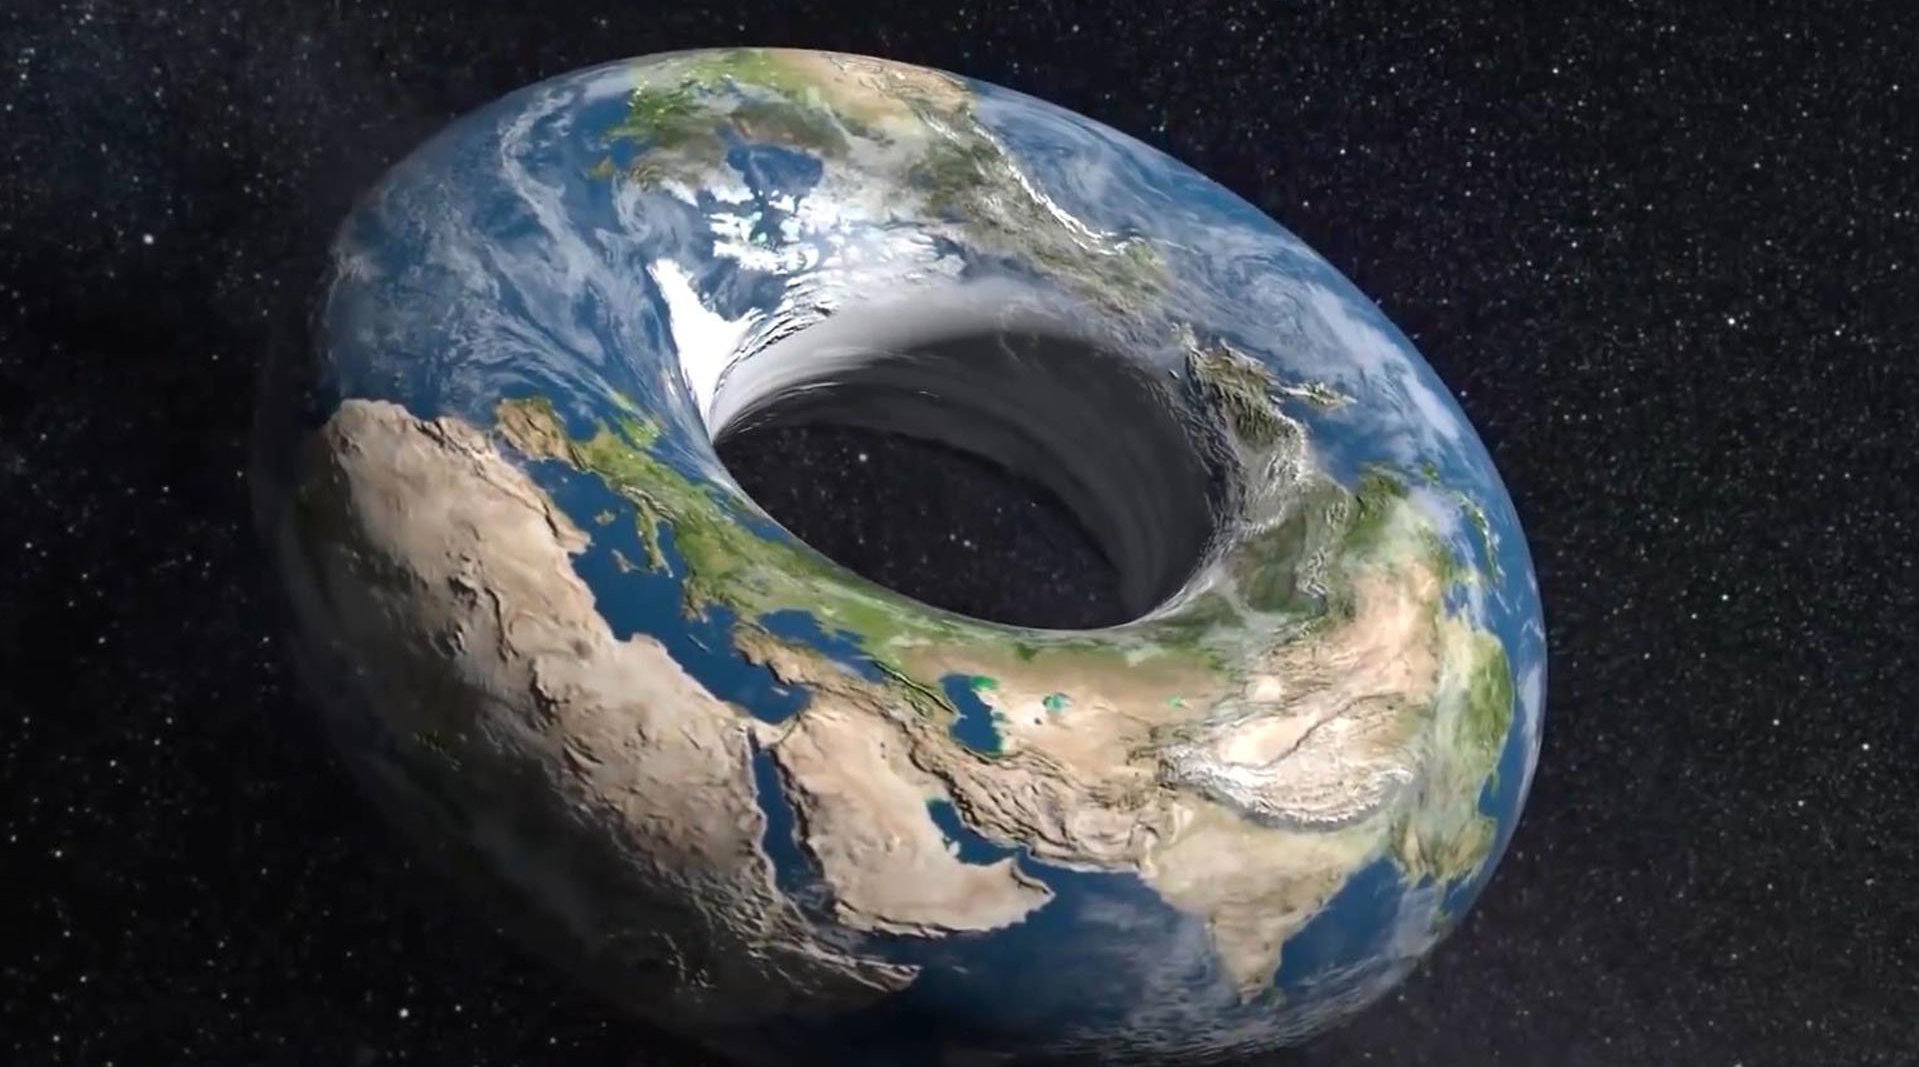 地球不是圆的?地平说坚持认为地球是平的,甚至可能是甜甜圈形状